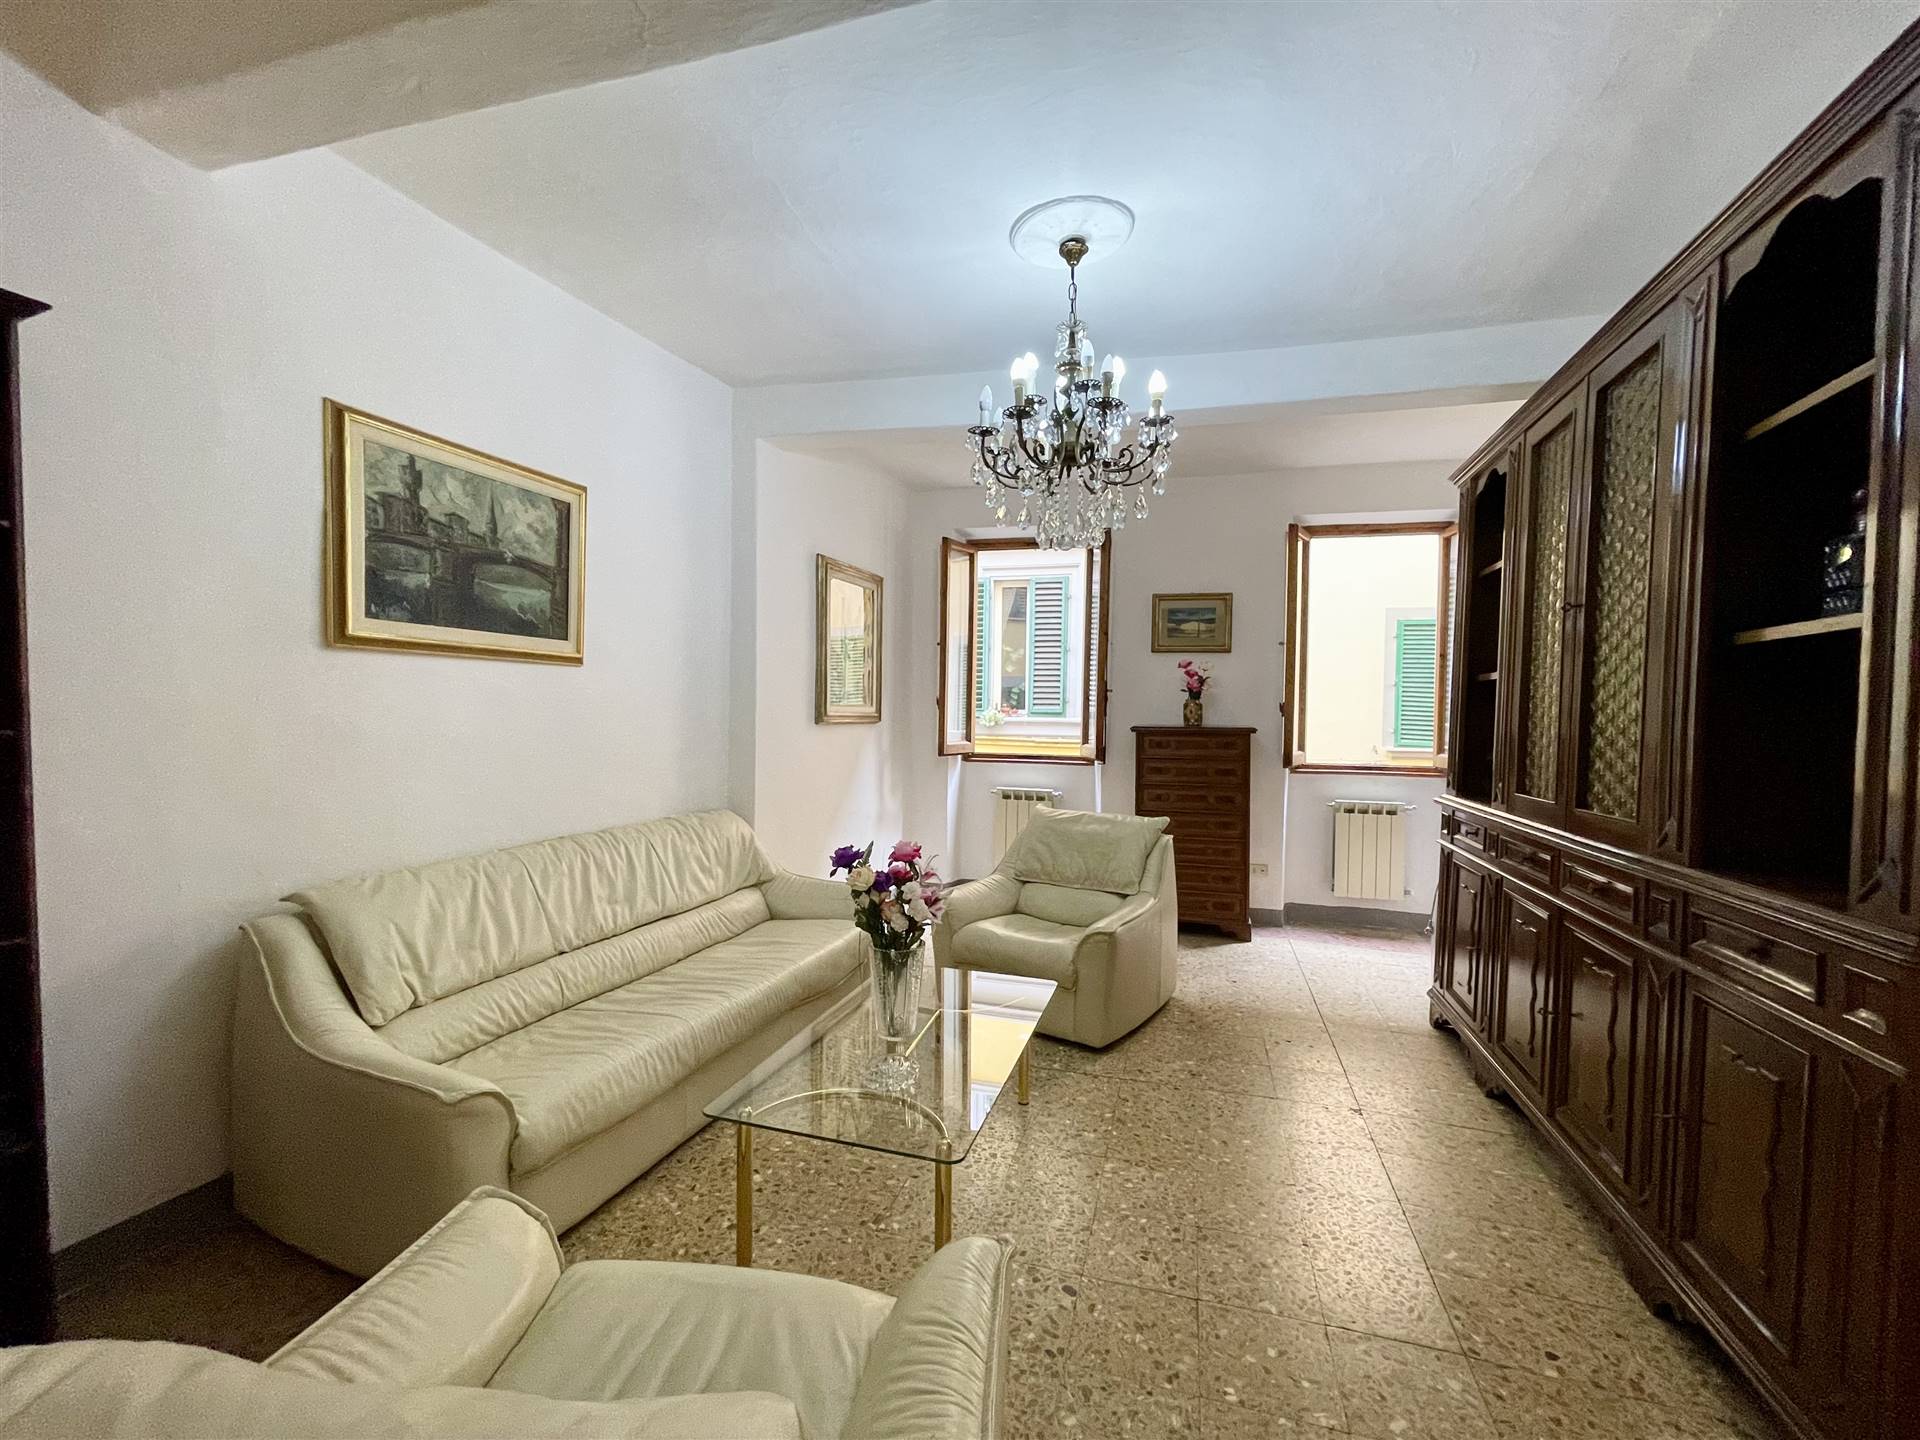 Appartamento abitabile in zona Santa Croce, Sant'Ambrogio a Firenze